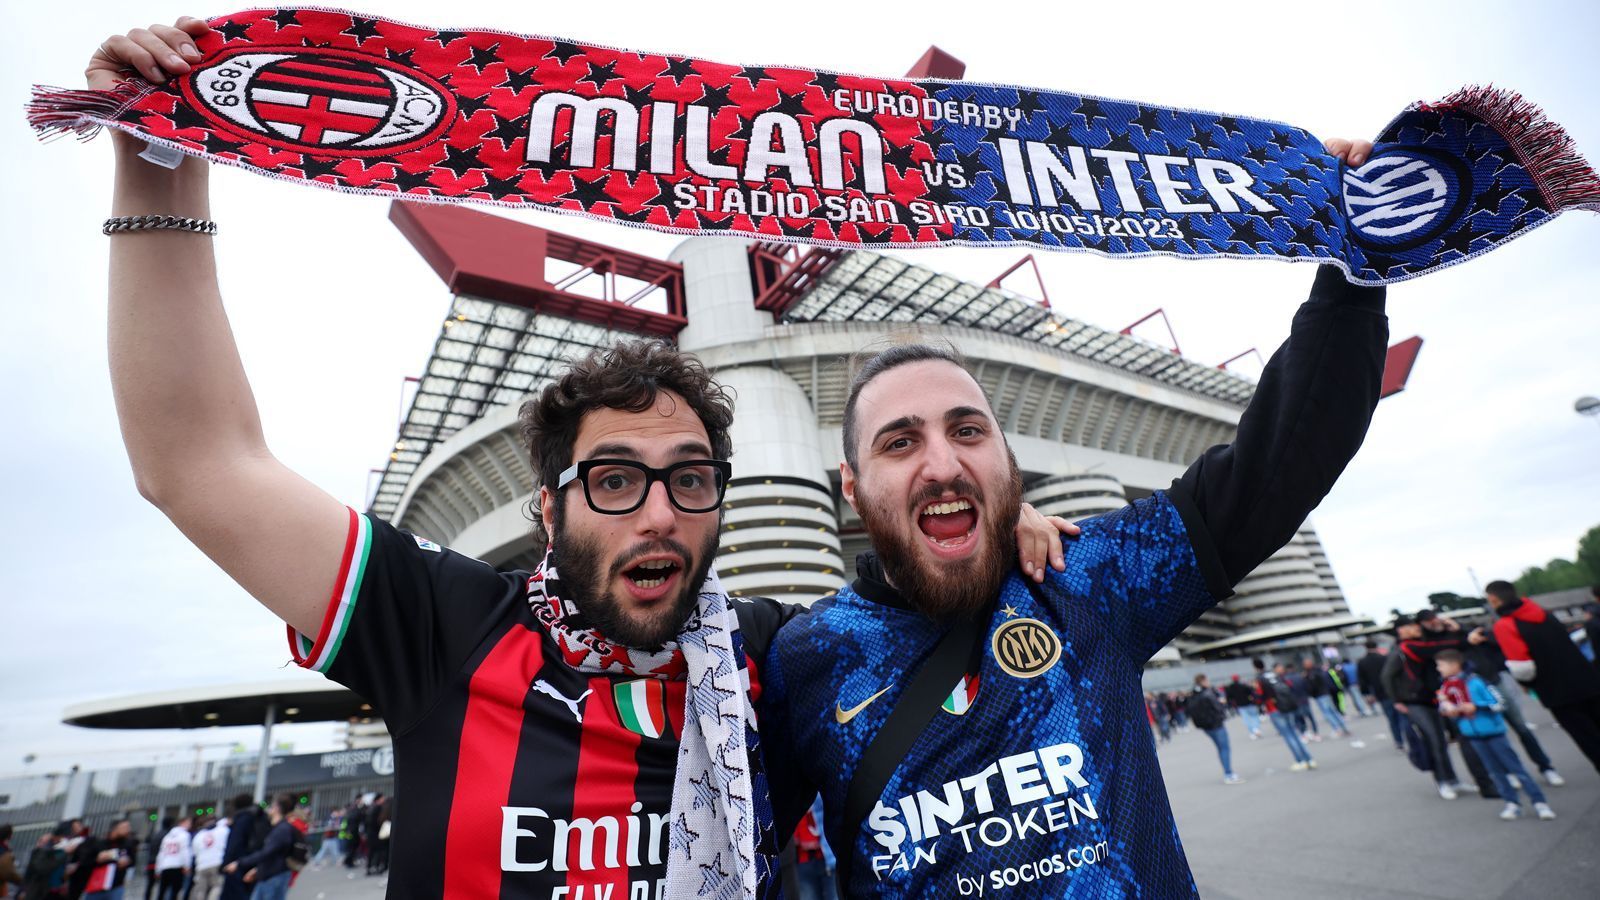 <strong>Mailänder Derby entscheidet über Scudetto</strong><br>
                Ausgerechnet im Derby della Madonnina hat Inter Mailand am Montagabend (<a target="_blank" href="https://www.ran.de/live">ab 20:45 Uhr im Liveticker bei <em>ran</em></a>) die Chance auf den 20. Scudetto. Klar, dass die AC Mailand dem Stadtrivalen die vorzeitige Meisterschaft versauen möchte. Das Derby gilt als eines der heißesten weltweit. <em><strong>ran</strong></em> zeigt euch die größten Rivalitäten und spannendsten Derbys im Fußball.
